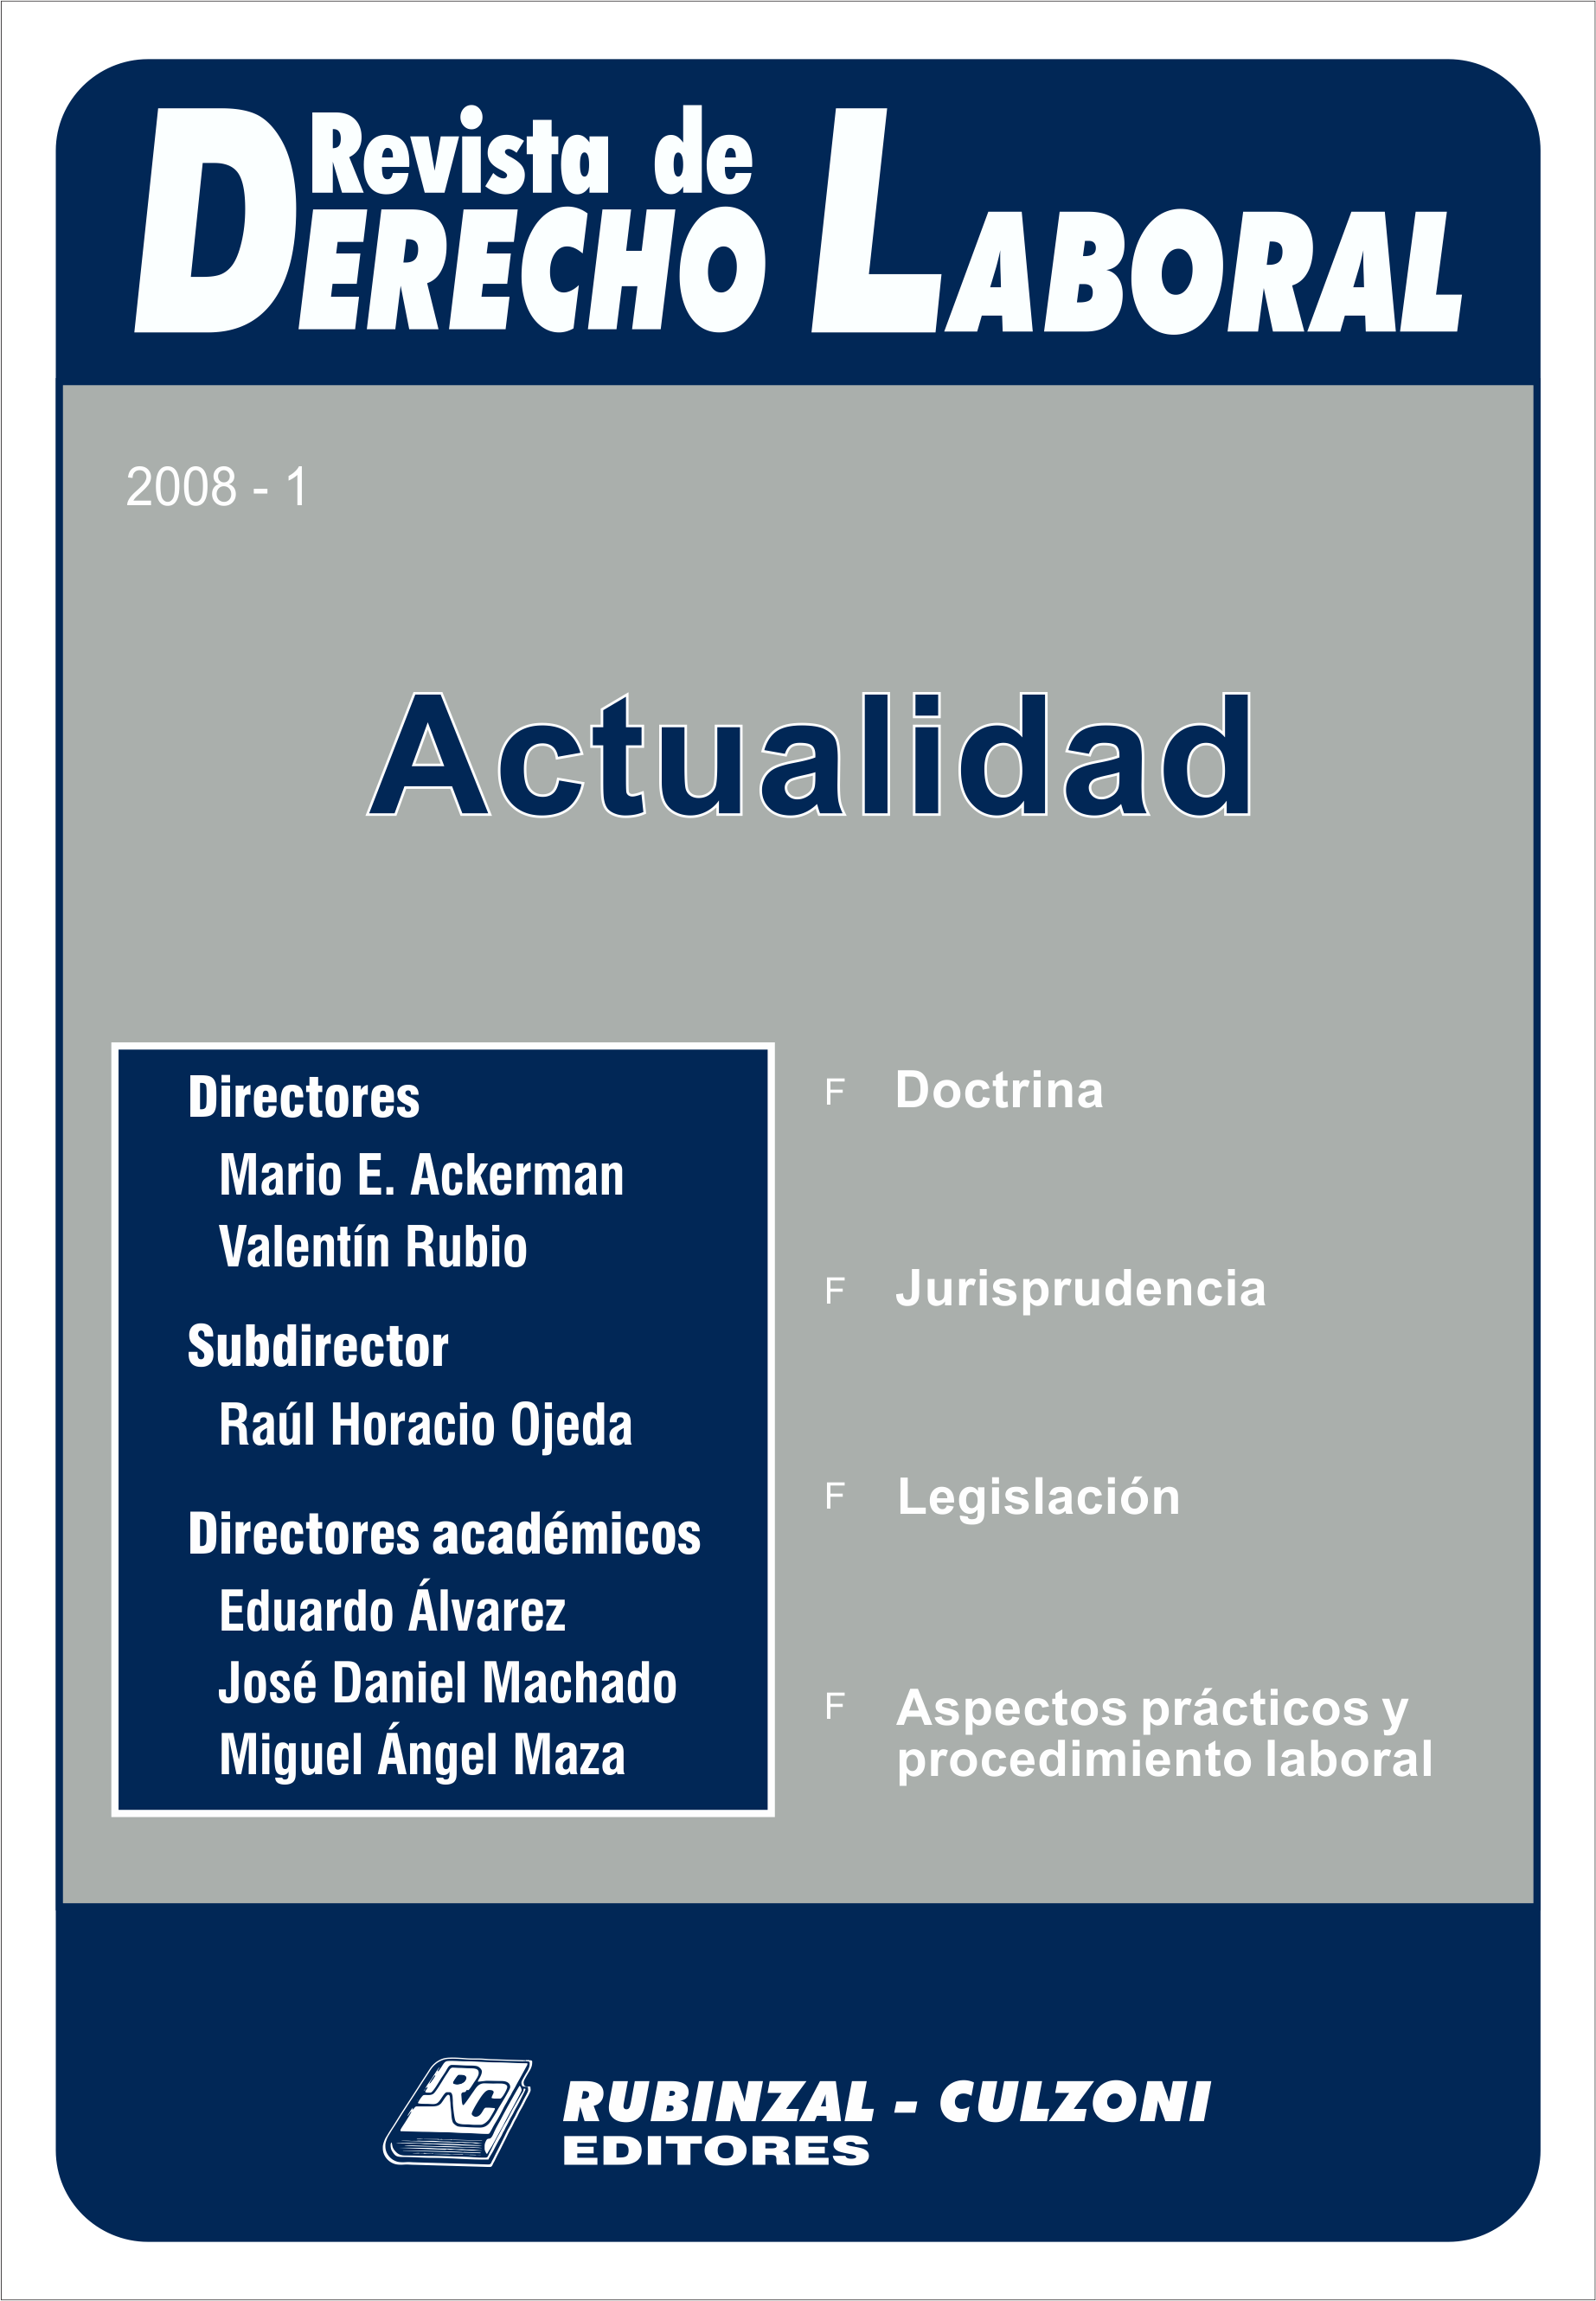 Revista de Derecho Laboral Actualidad - Año 2008 - 1